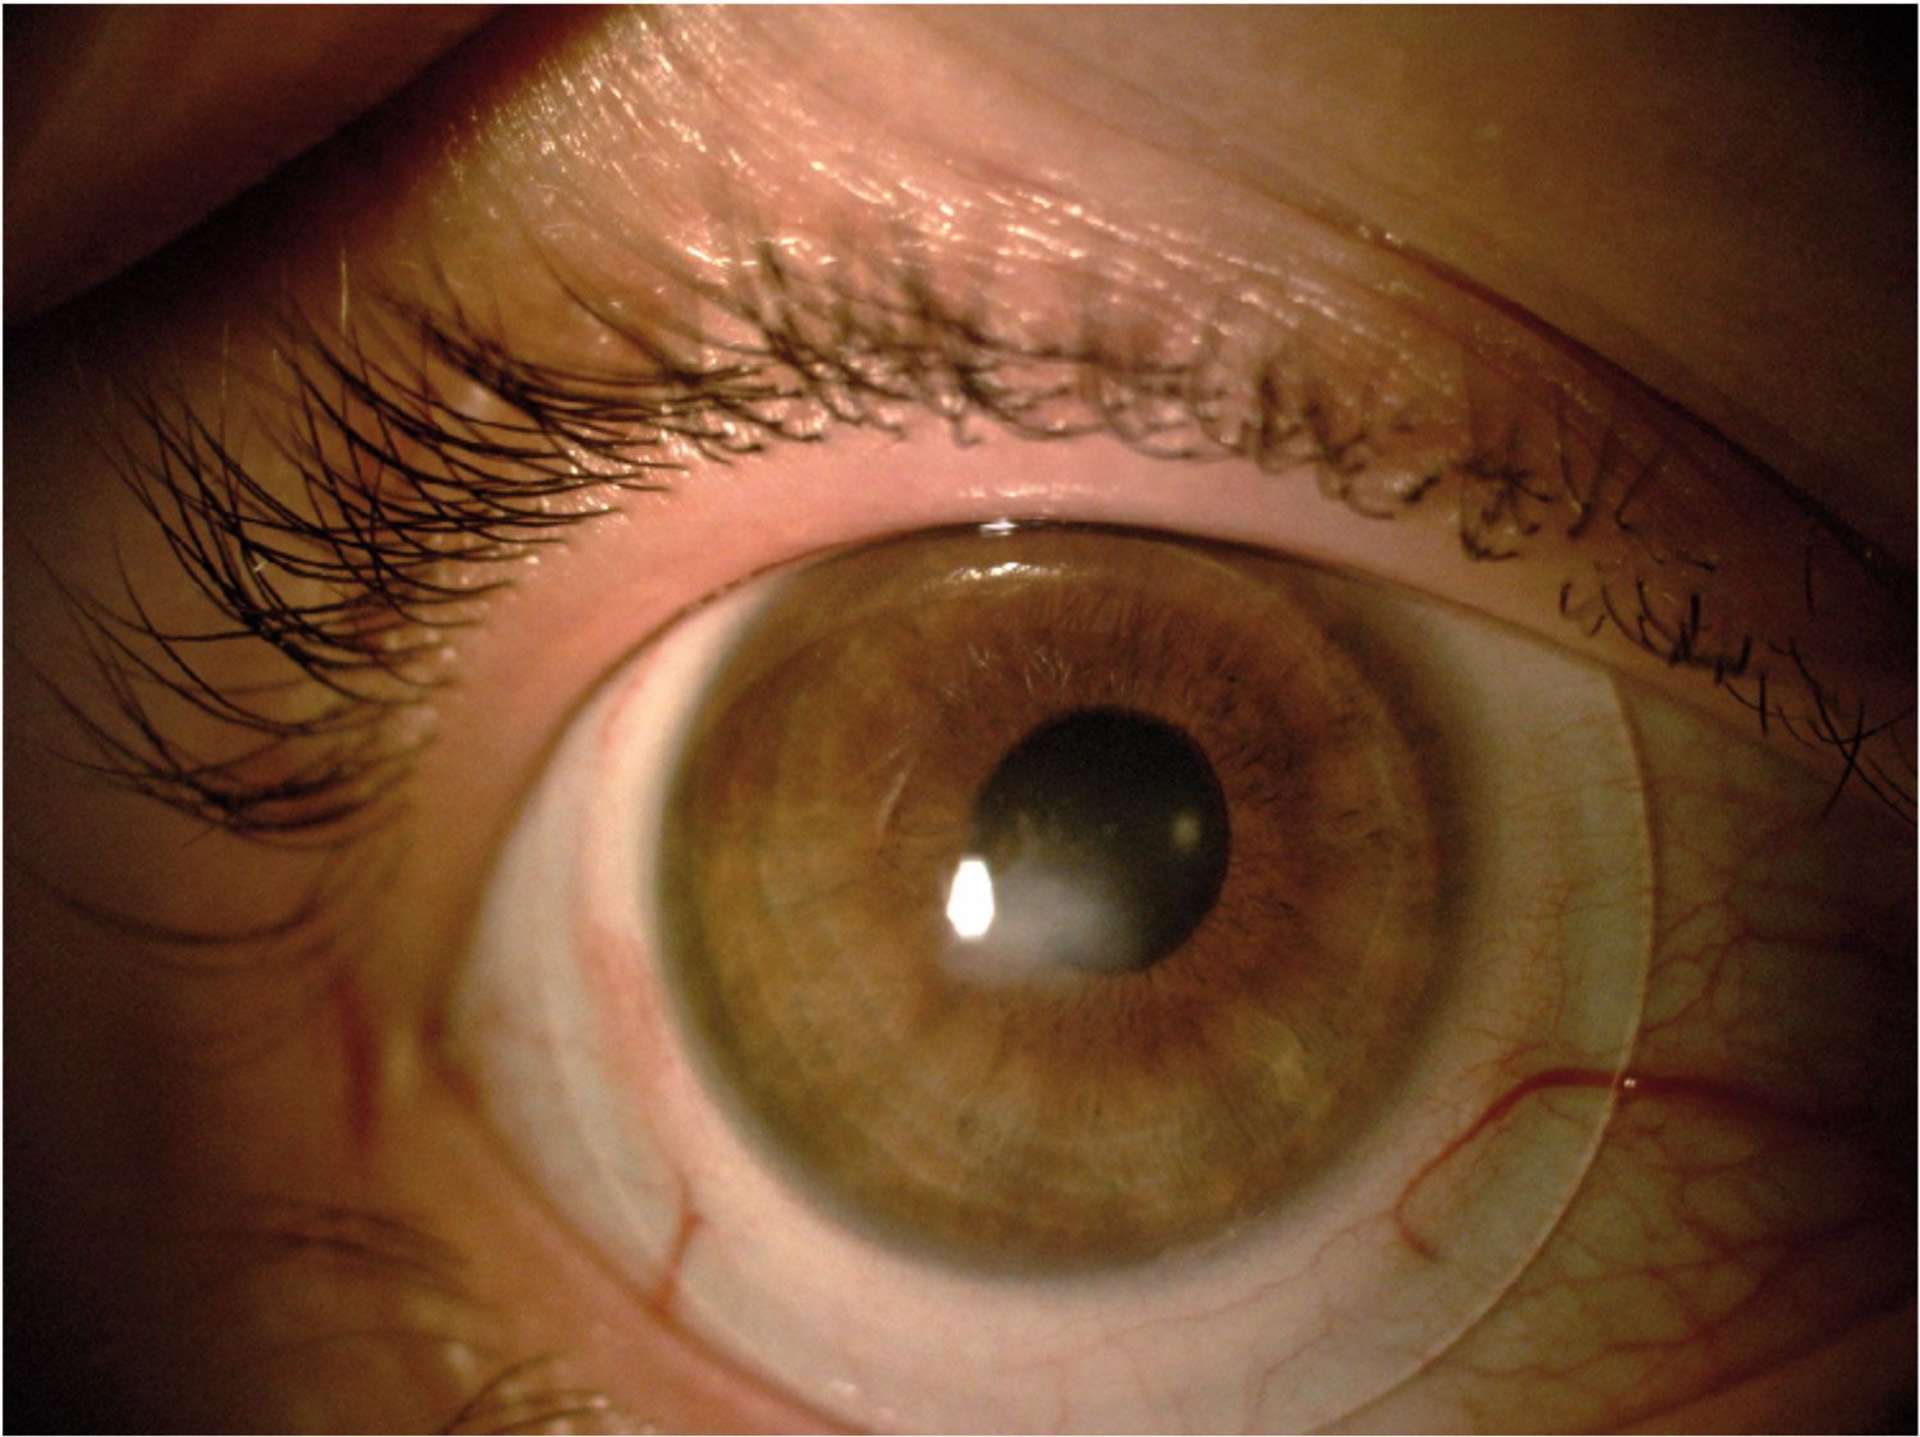 Patiente de 30 ans présentant une dystrophie nodulaire de Salzmann équipée avec des lentilles sclérales.
